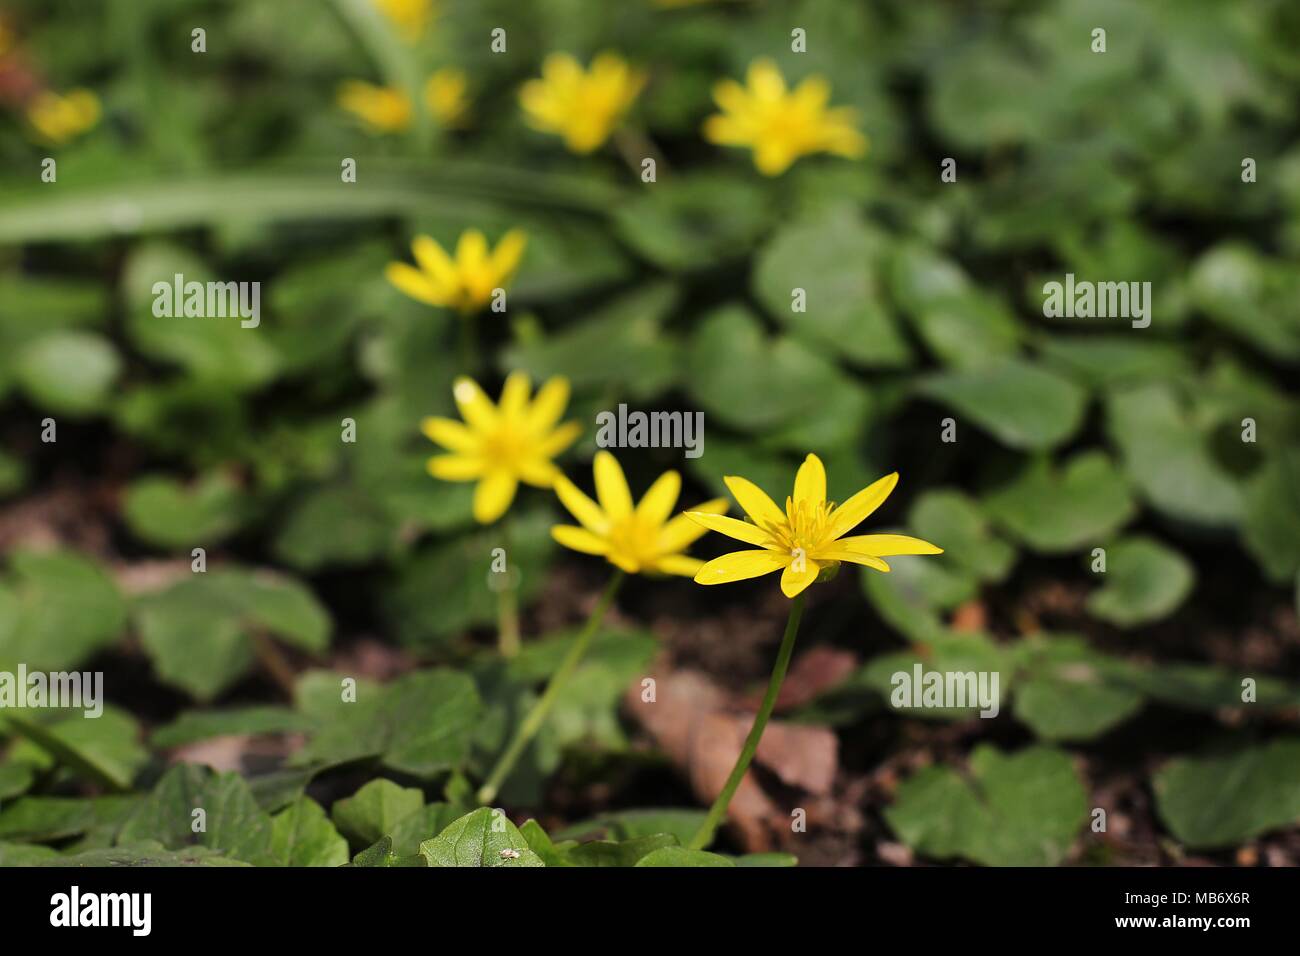 Gelb Frühling Blumen von Ficaria verna (pilewort Stockfotografie - Alamy